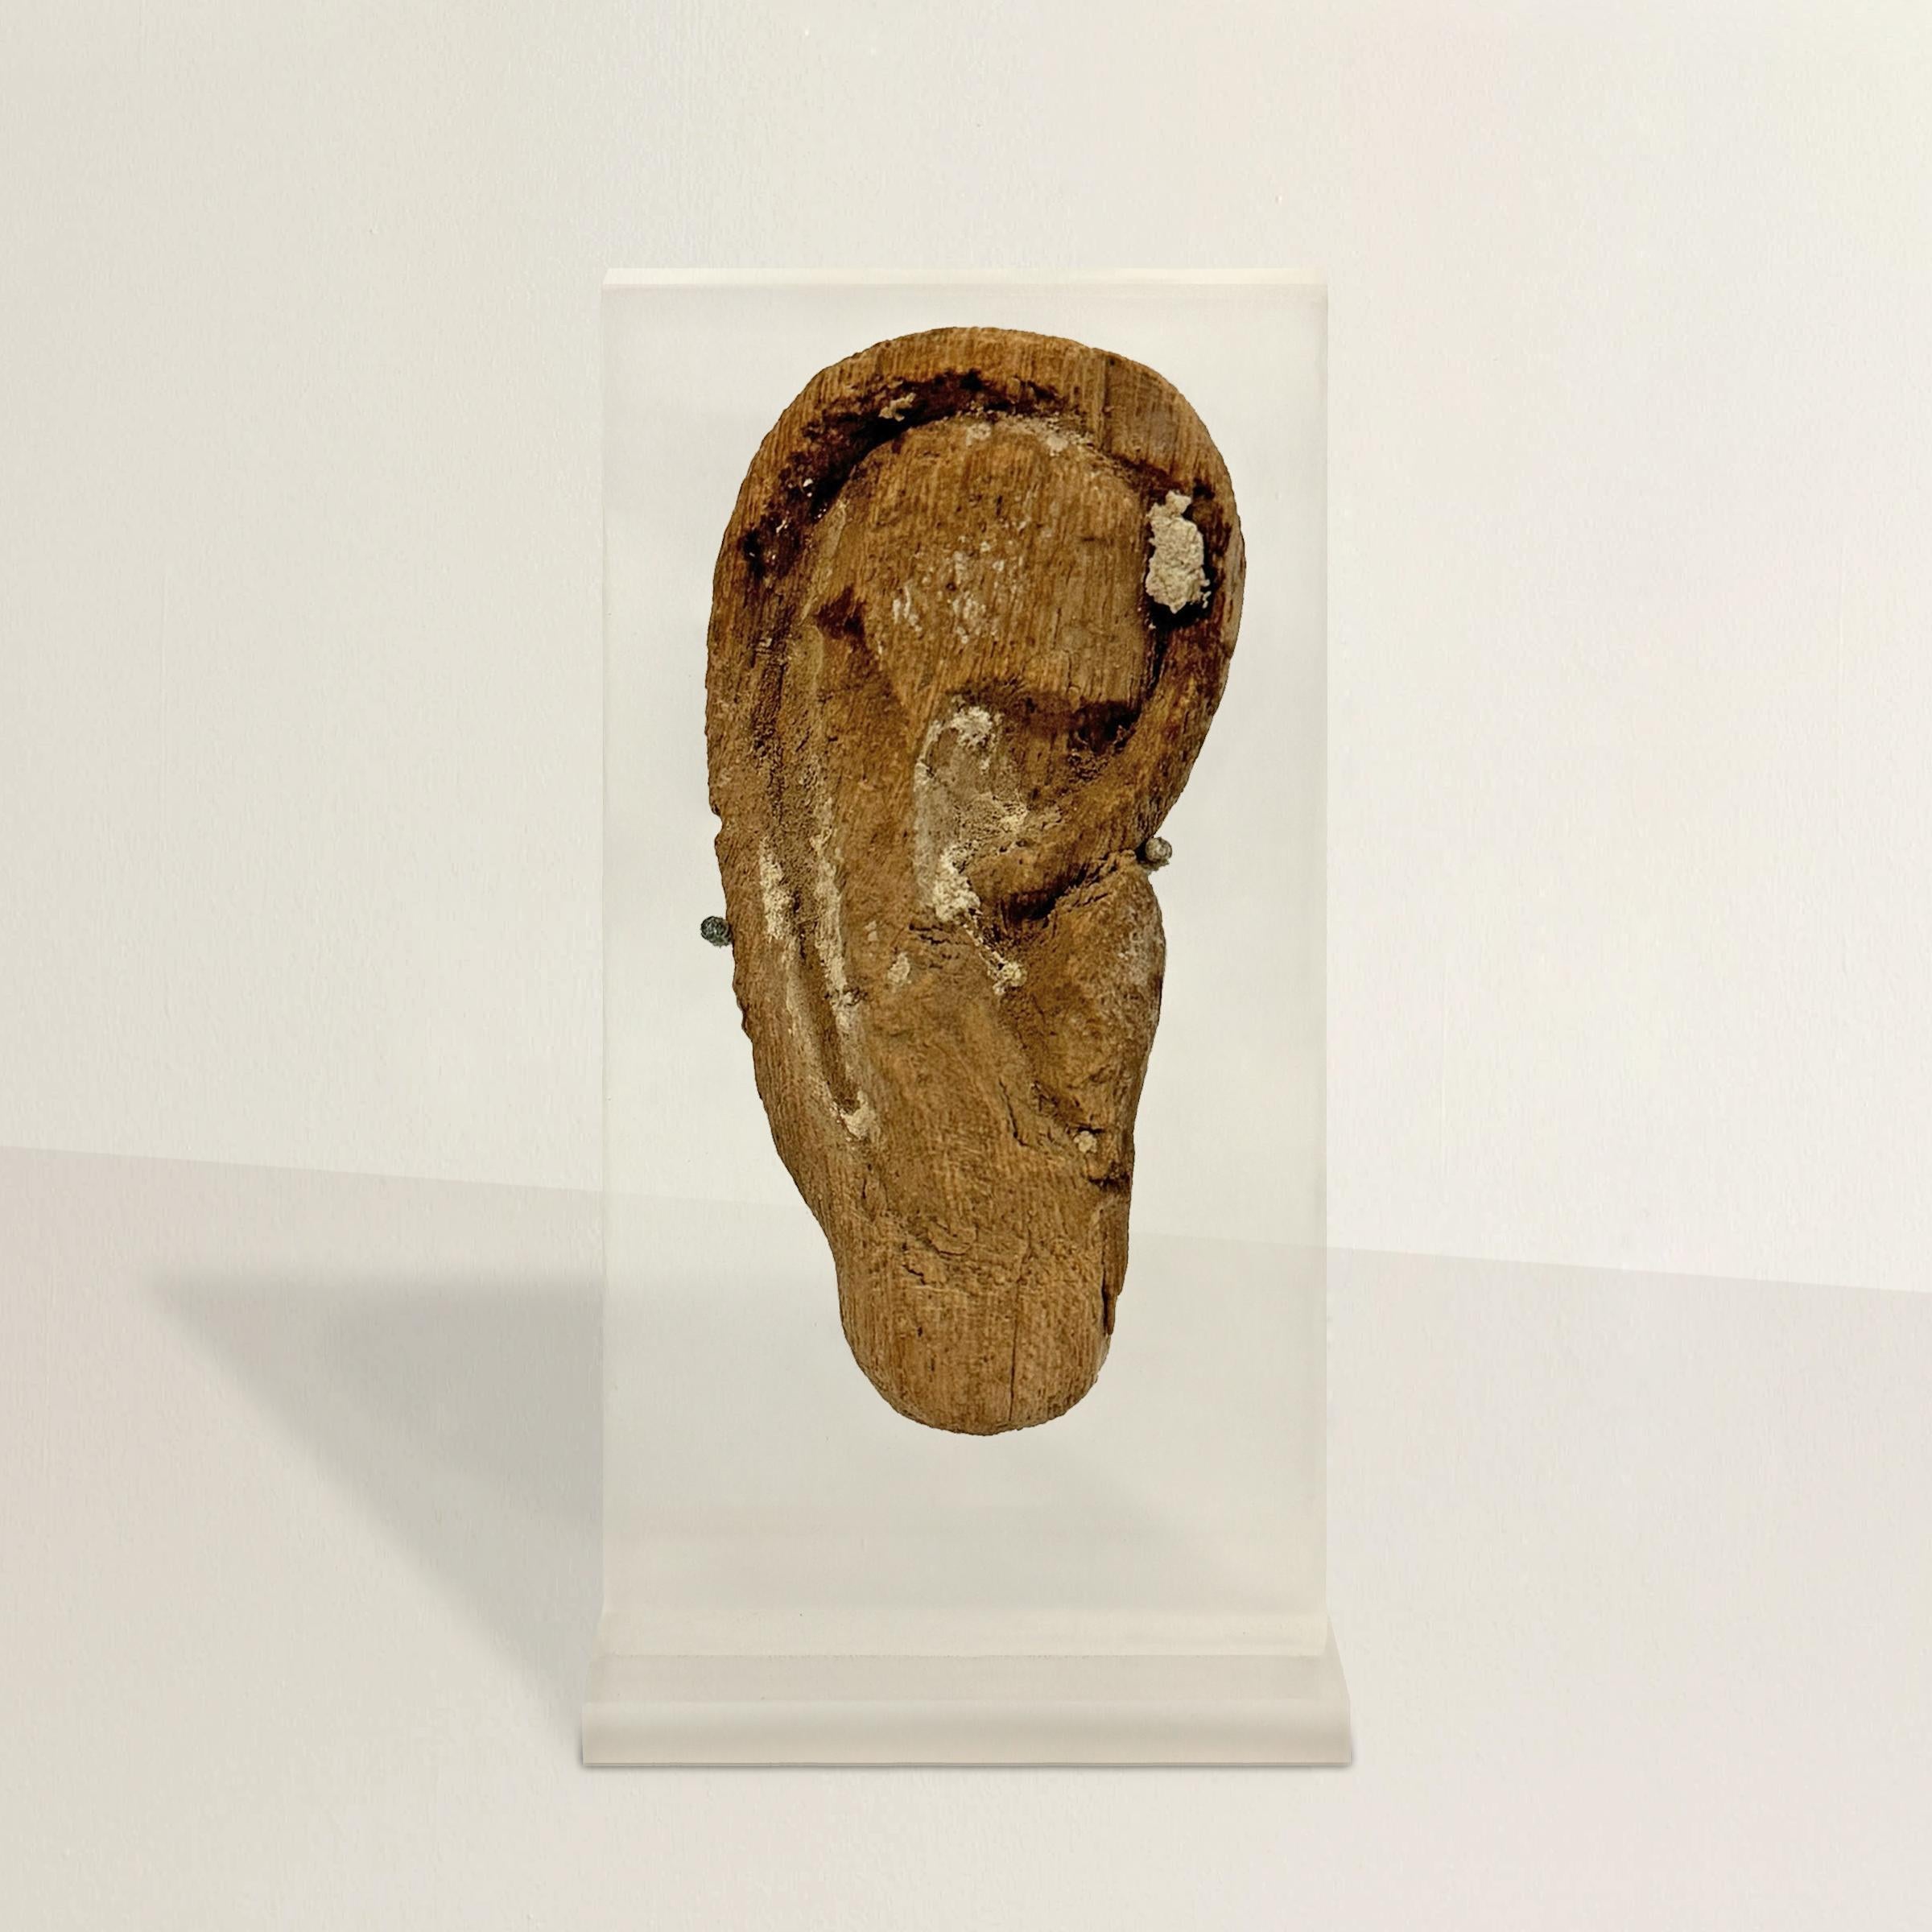 Dieses geschnitzte ägyptische Holzohr aus der späten bis ptolemäischen Periode, das einst zu einer Mumienmaske gehörte, ist ein ergreifendes Zeugnis altägyptischer Bräuche und Glaubensvorstellungen. Sie ist über 2500 Jahre alt und ein